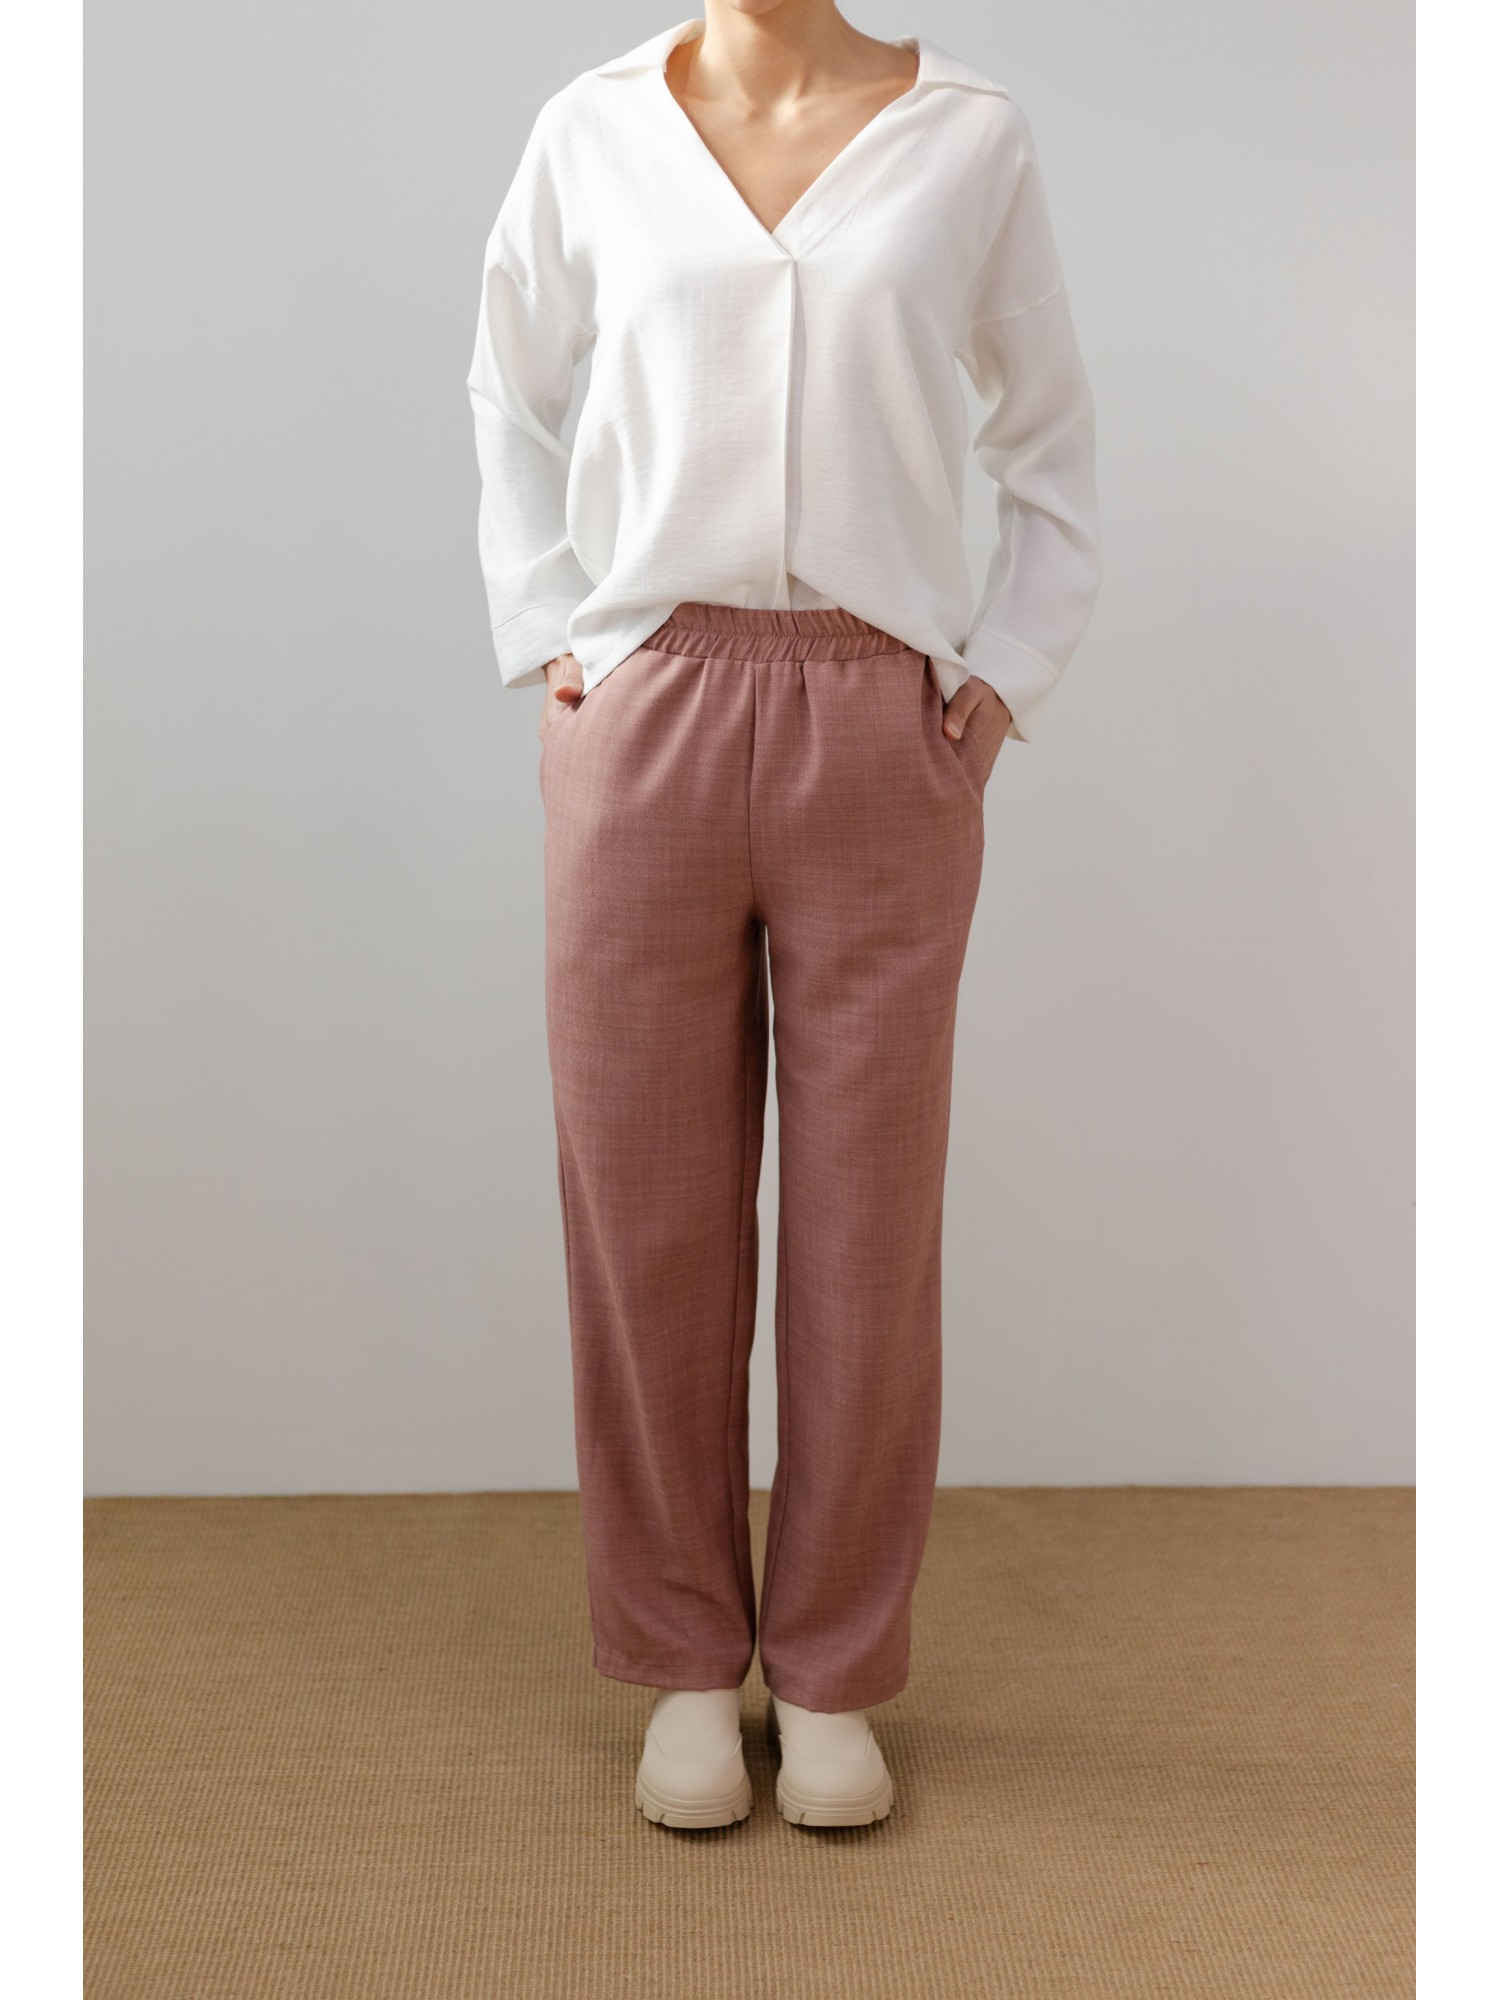 Pantalón Quartz. Colección AW23 PAN Producto Básico en candelascloset. Tejido de mezcla poliéster rosa con cintura elástica.